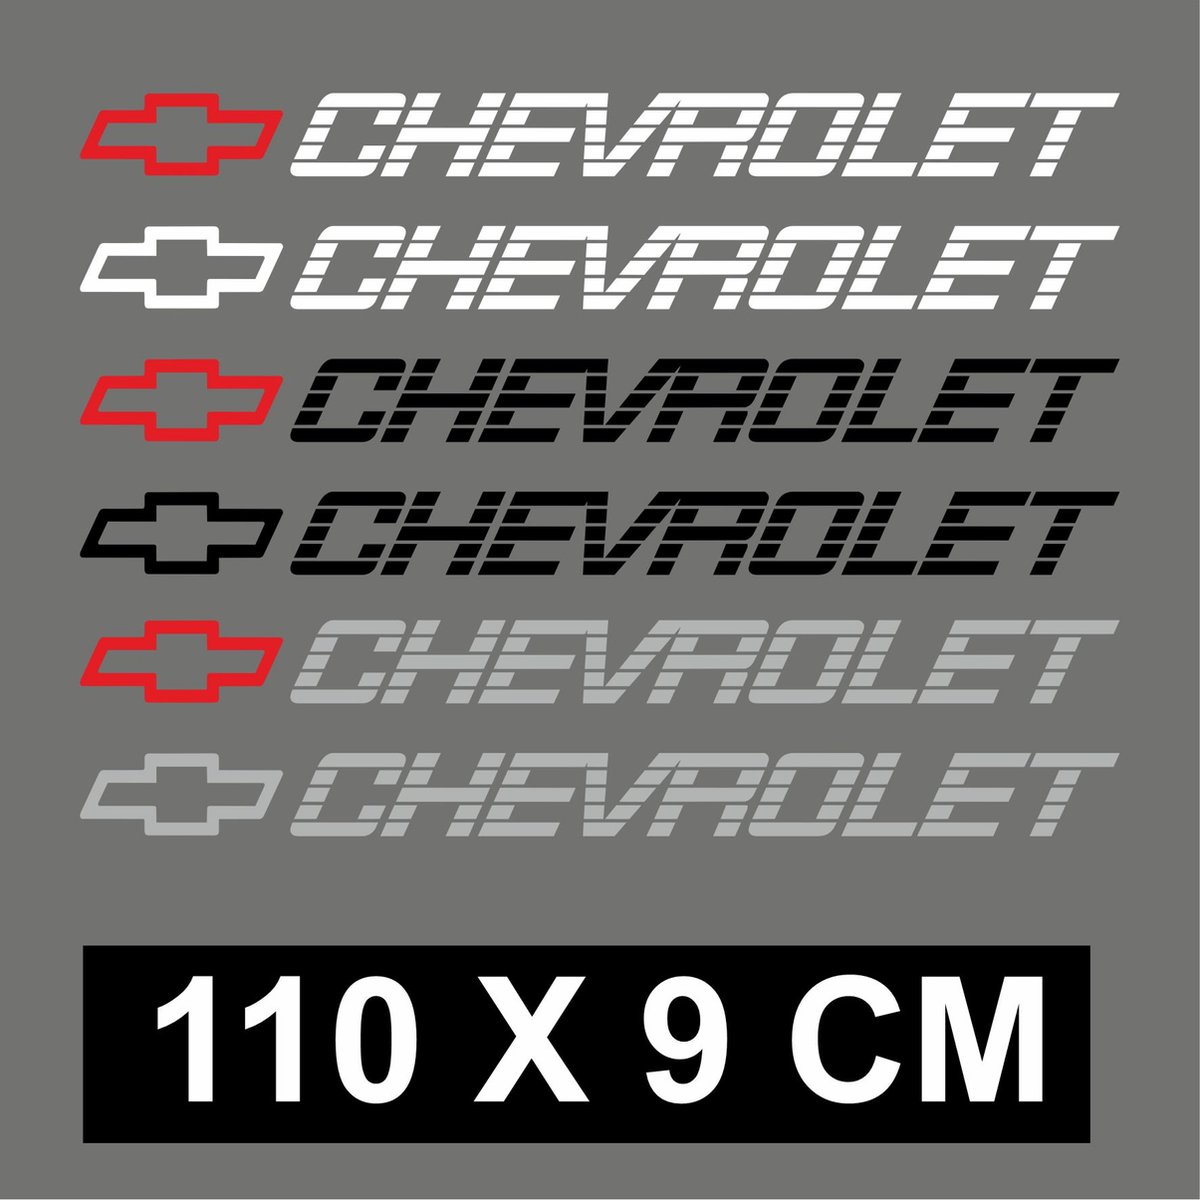 Chevrolet Pickup tailgate sticker met chevy logo 110x9cm - zwarte tekst en rood logo